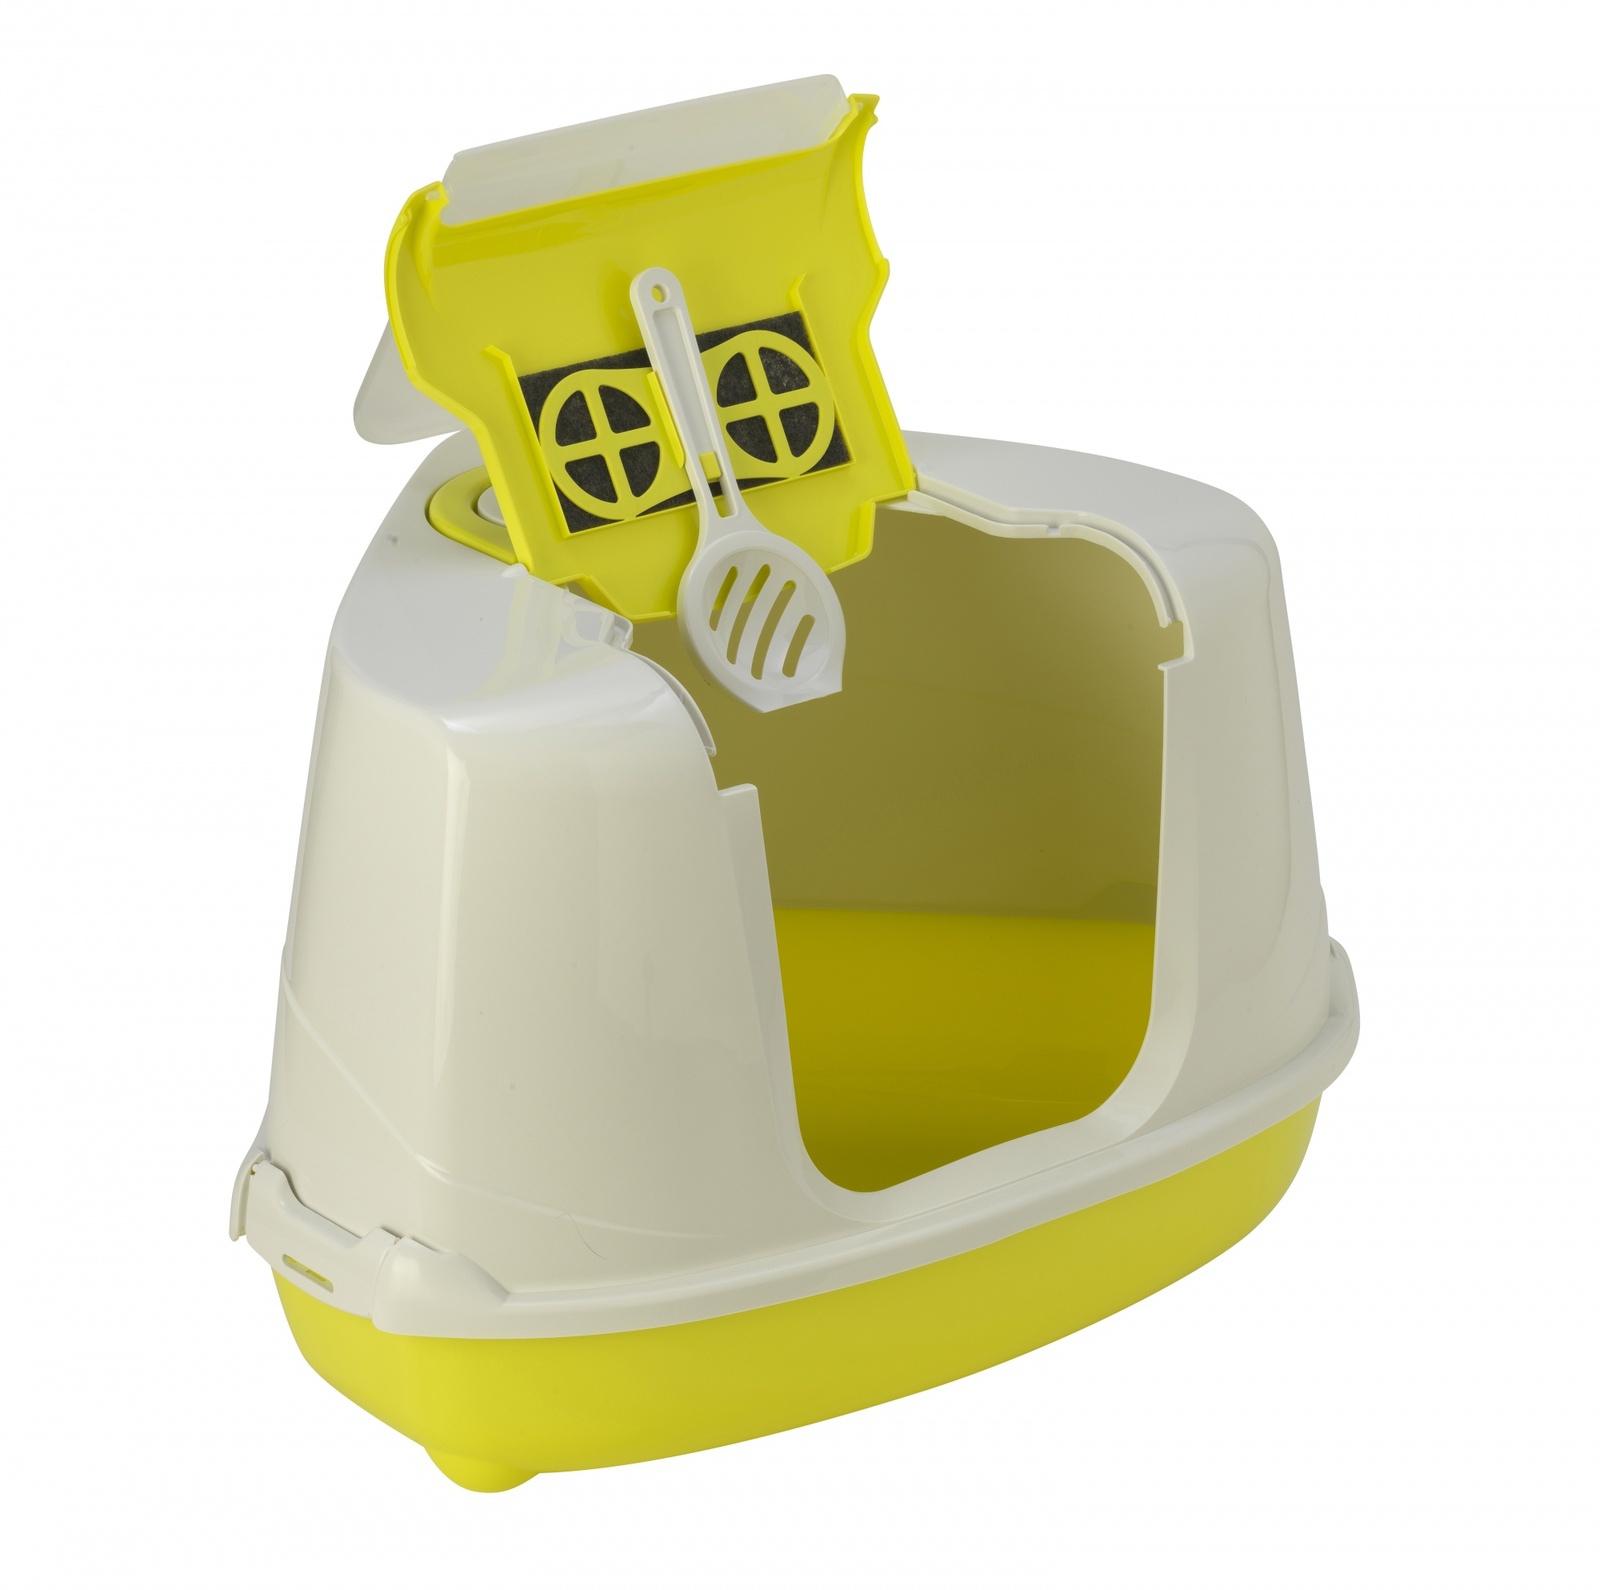 Moderna Moderna туалет-домик угловой Flip с угольным фильтром, 56X44X36 см, лимонно-желтый (1,6 кг) moderna moderna автопоилка smart 3л лимонно желтый 3 л